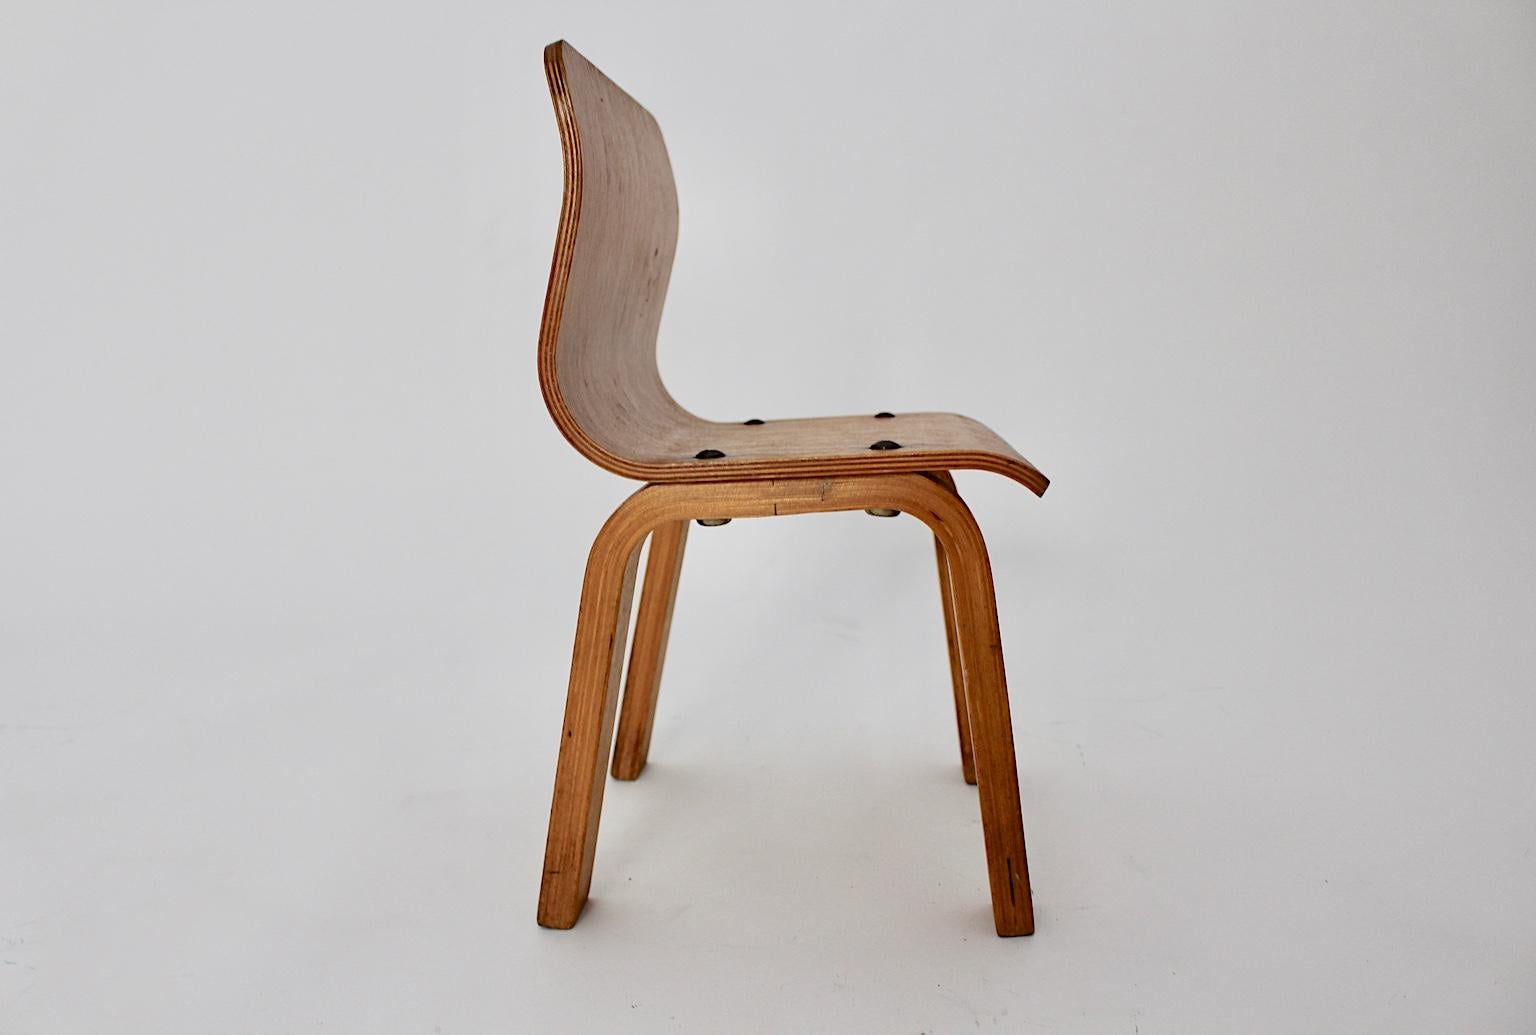 Skandinavisch-moderner Kinderstuhl aus Birke im klaren Design, der in den 1950er Jahren hergestellt wurde.
Die Sitzschale aus Birkensperrholz ist mit Metallschrauben an den gebogenen Beinen befestigt.
Auch der Kinderstuhl ist sorgfältig gereinigt